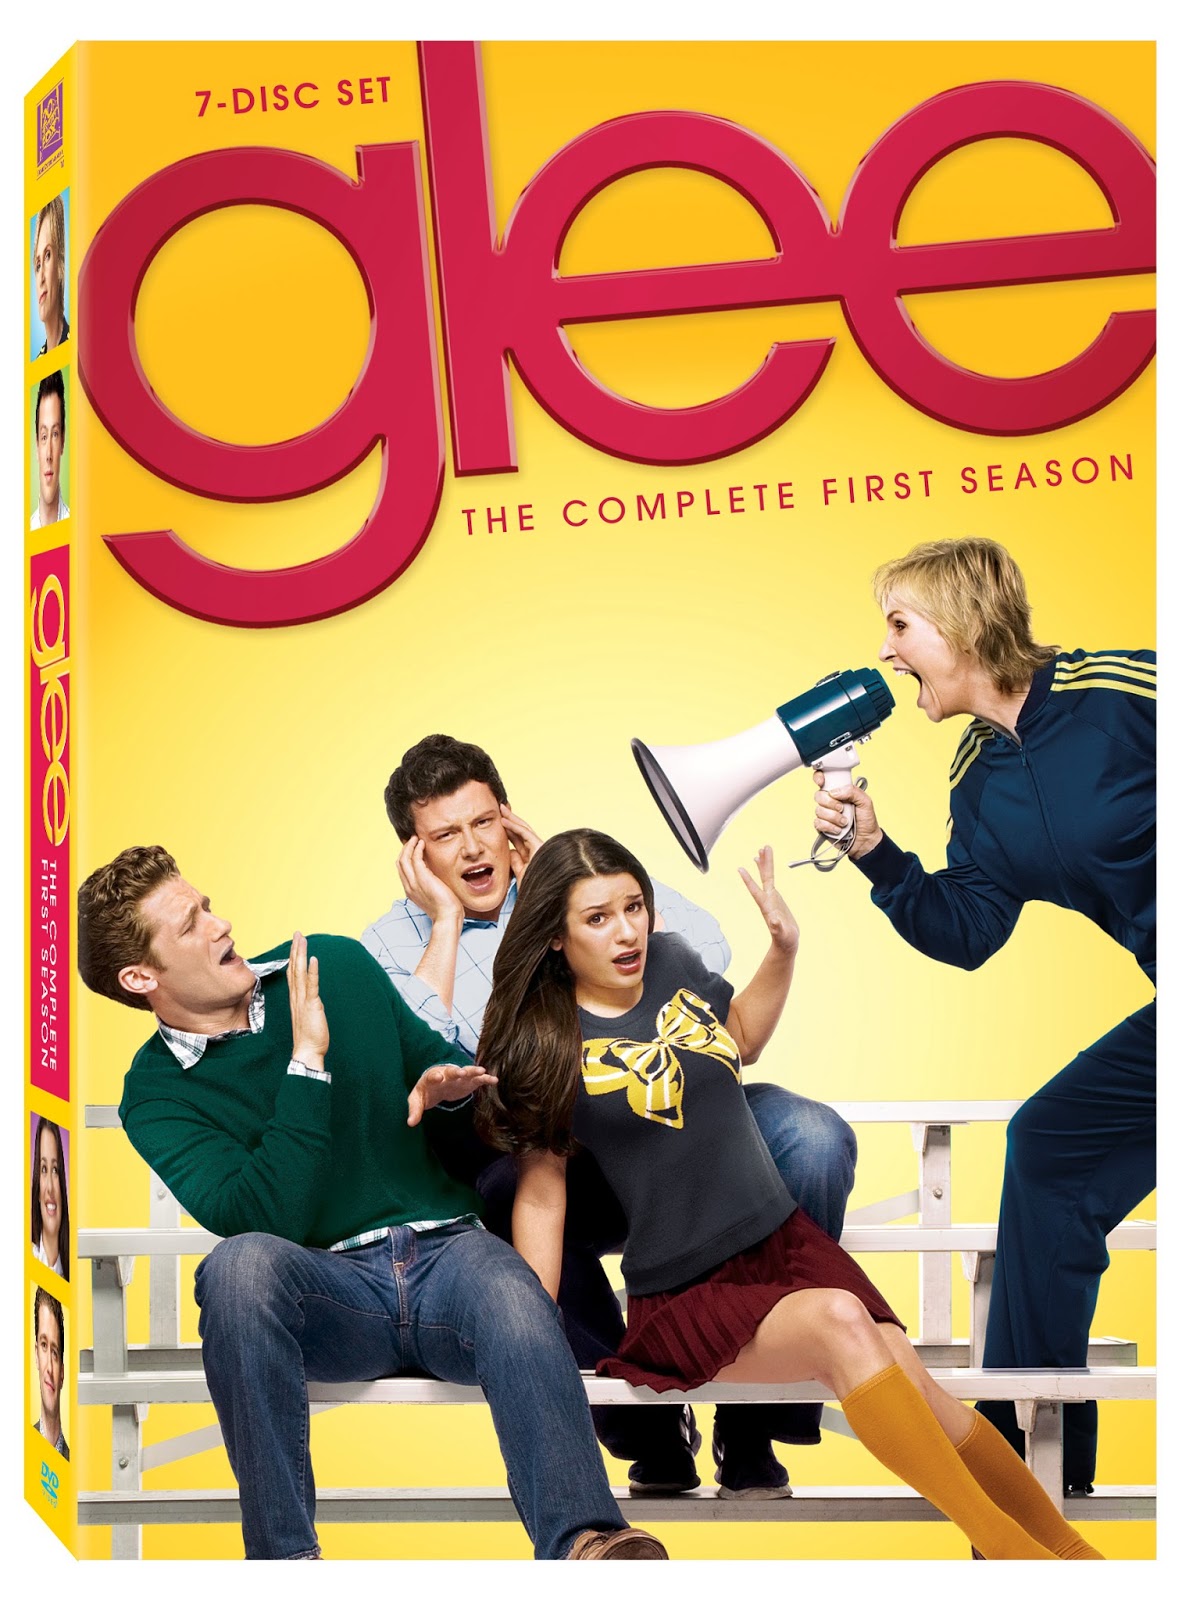 http://thetvchick.com/wp-content/uploads/2010/09/Glee-3D-Boxart-final1.jpg